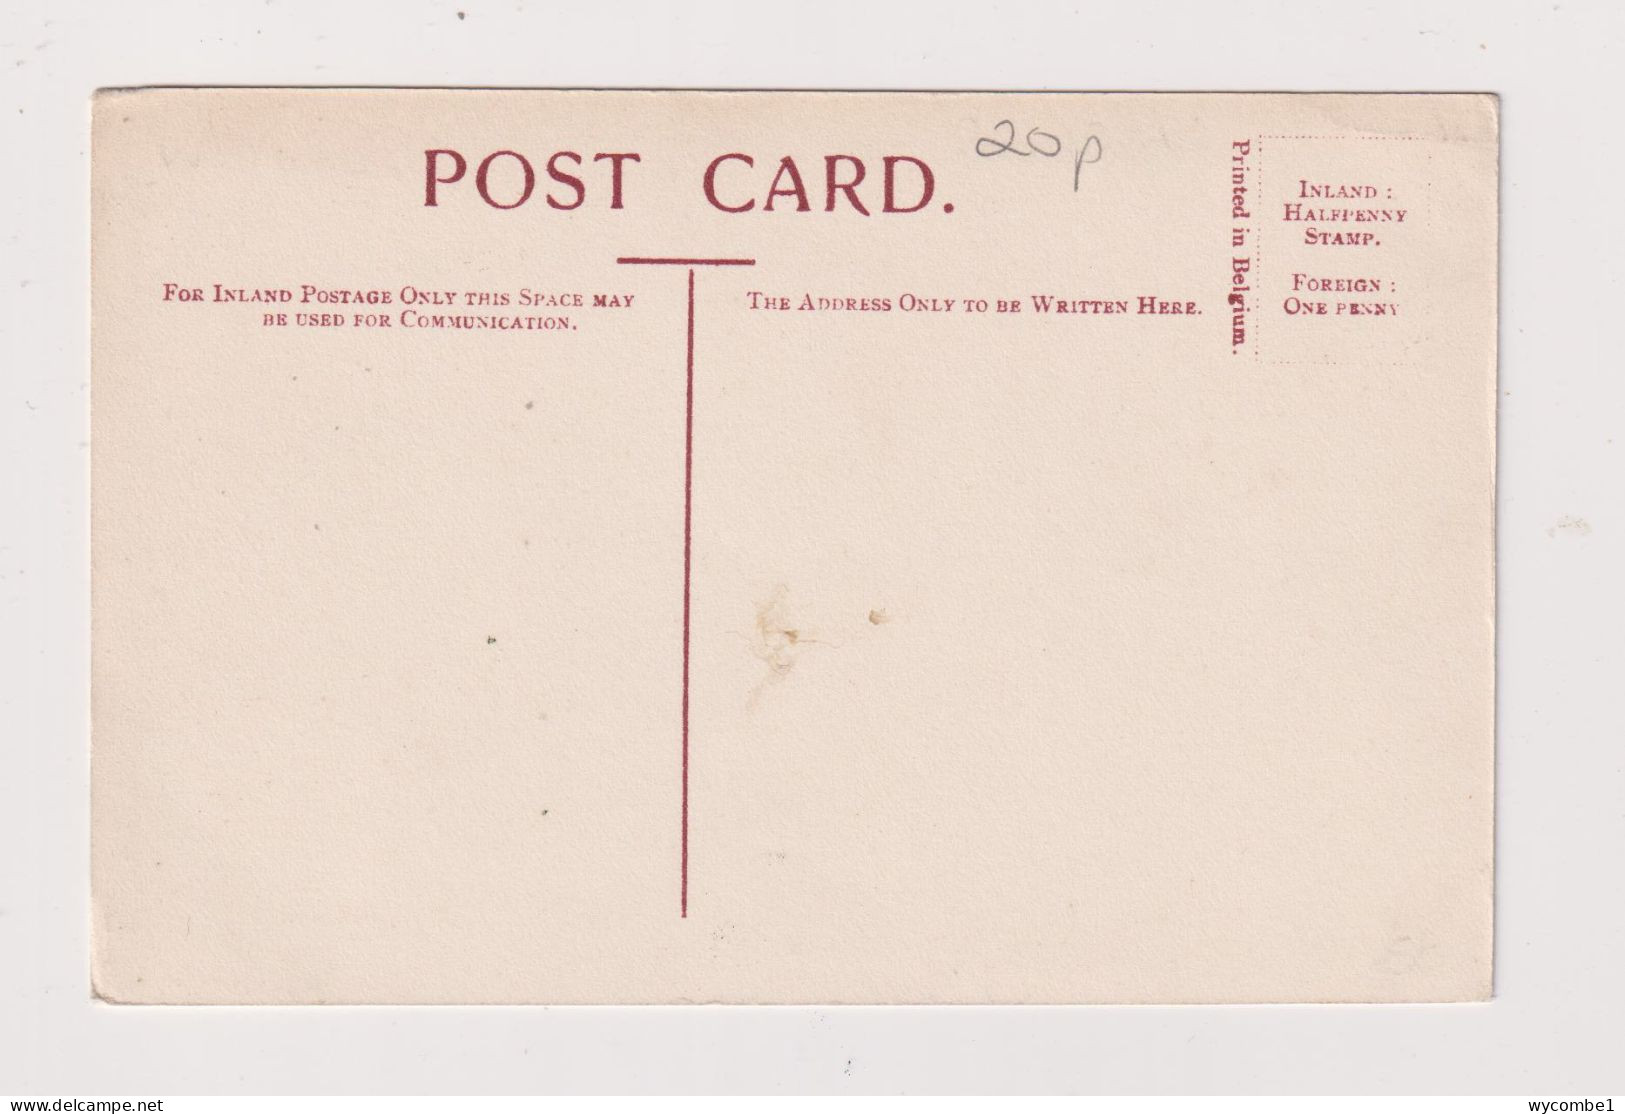 ENGLAND -  Bradford Cartwright Memorial Hall  Unused Vintage Postcard - Bradford